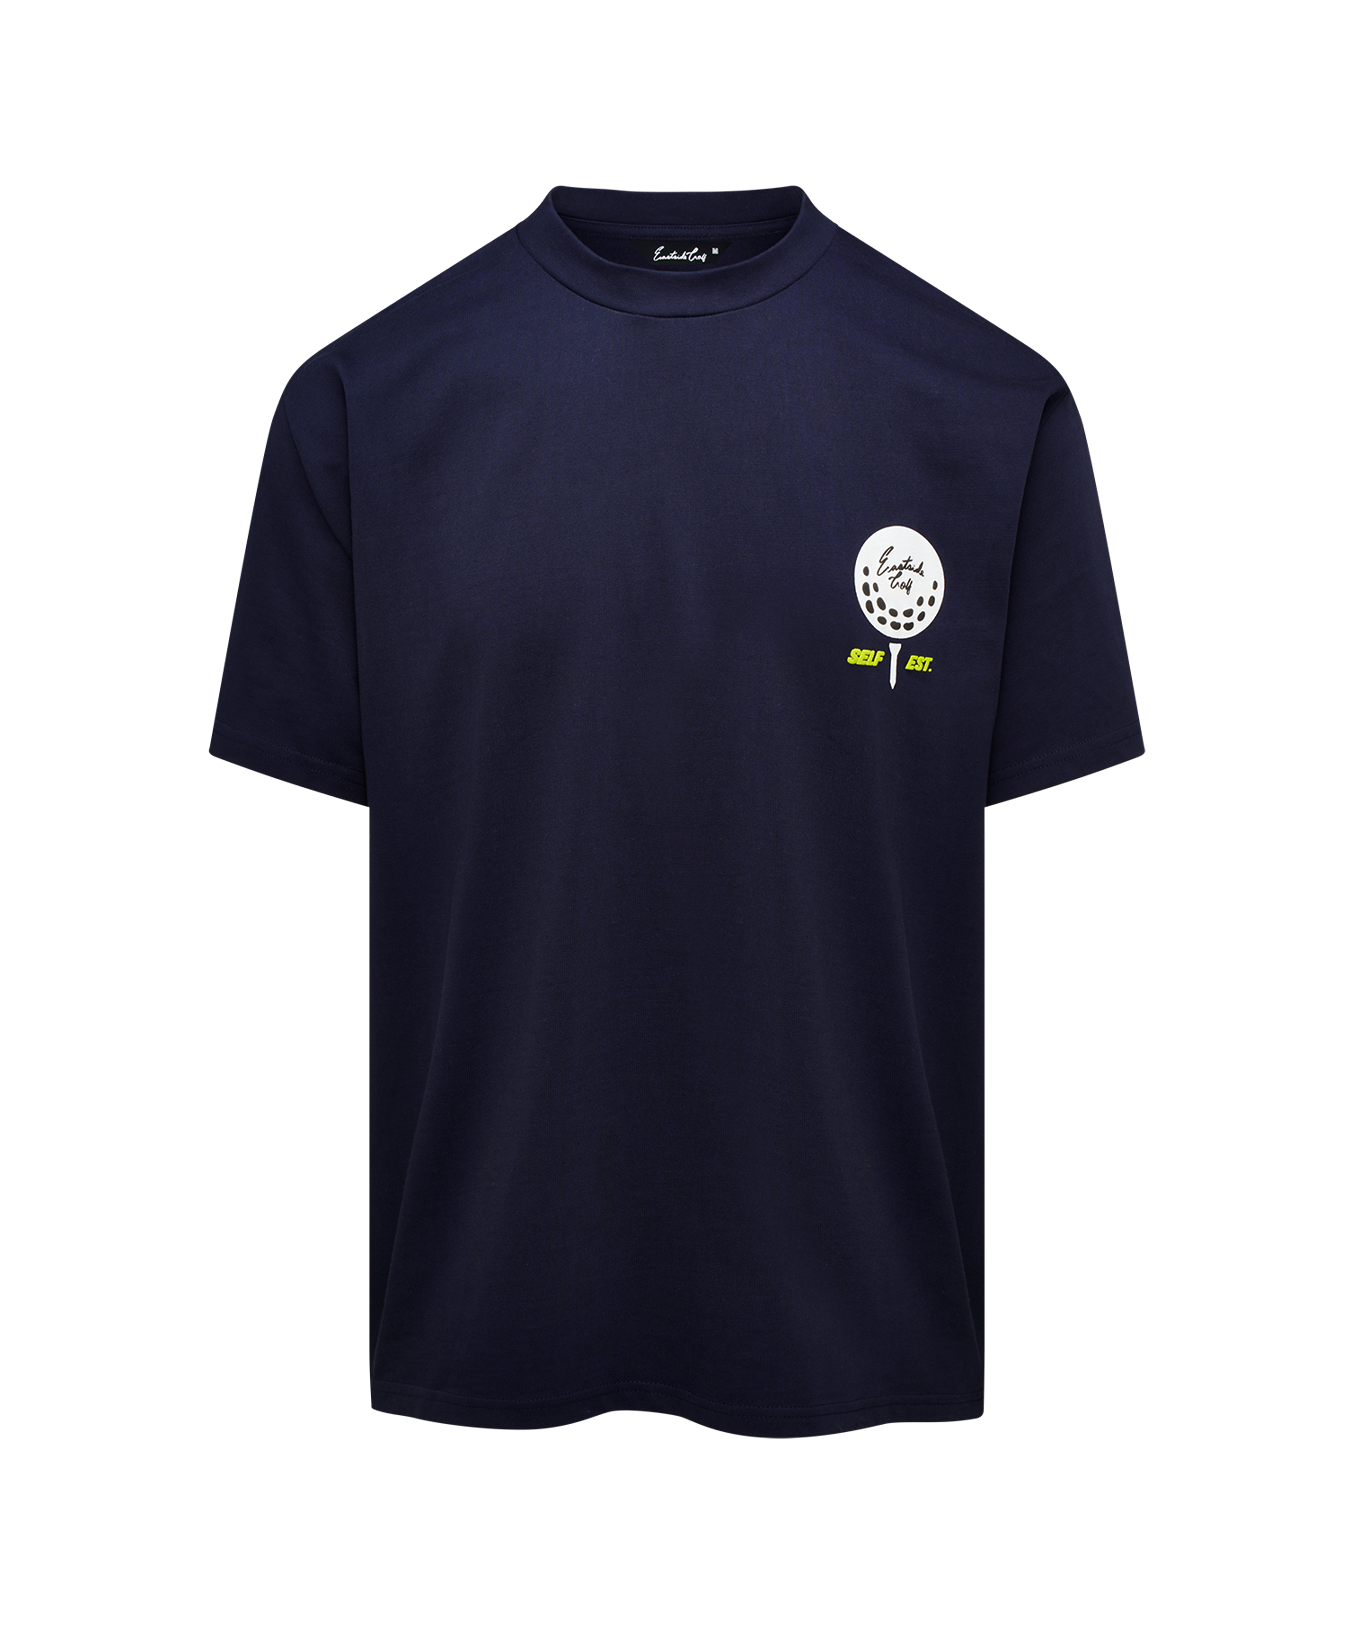 Midnight Navy Statement T-Shirt